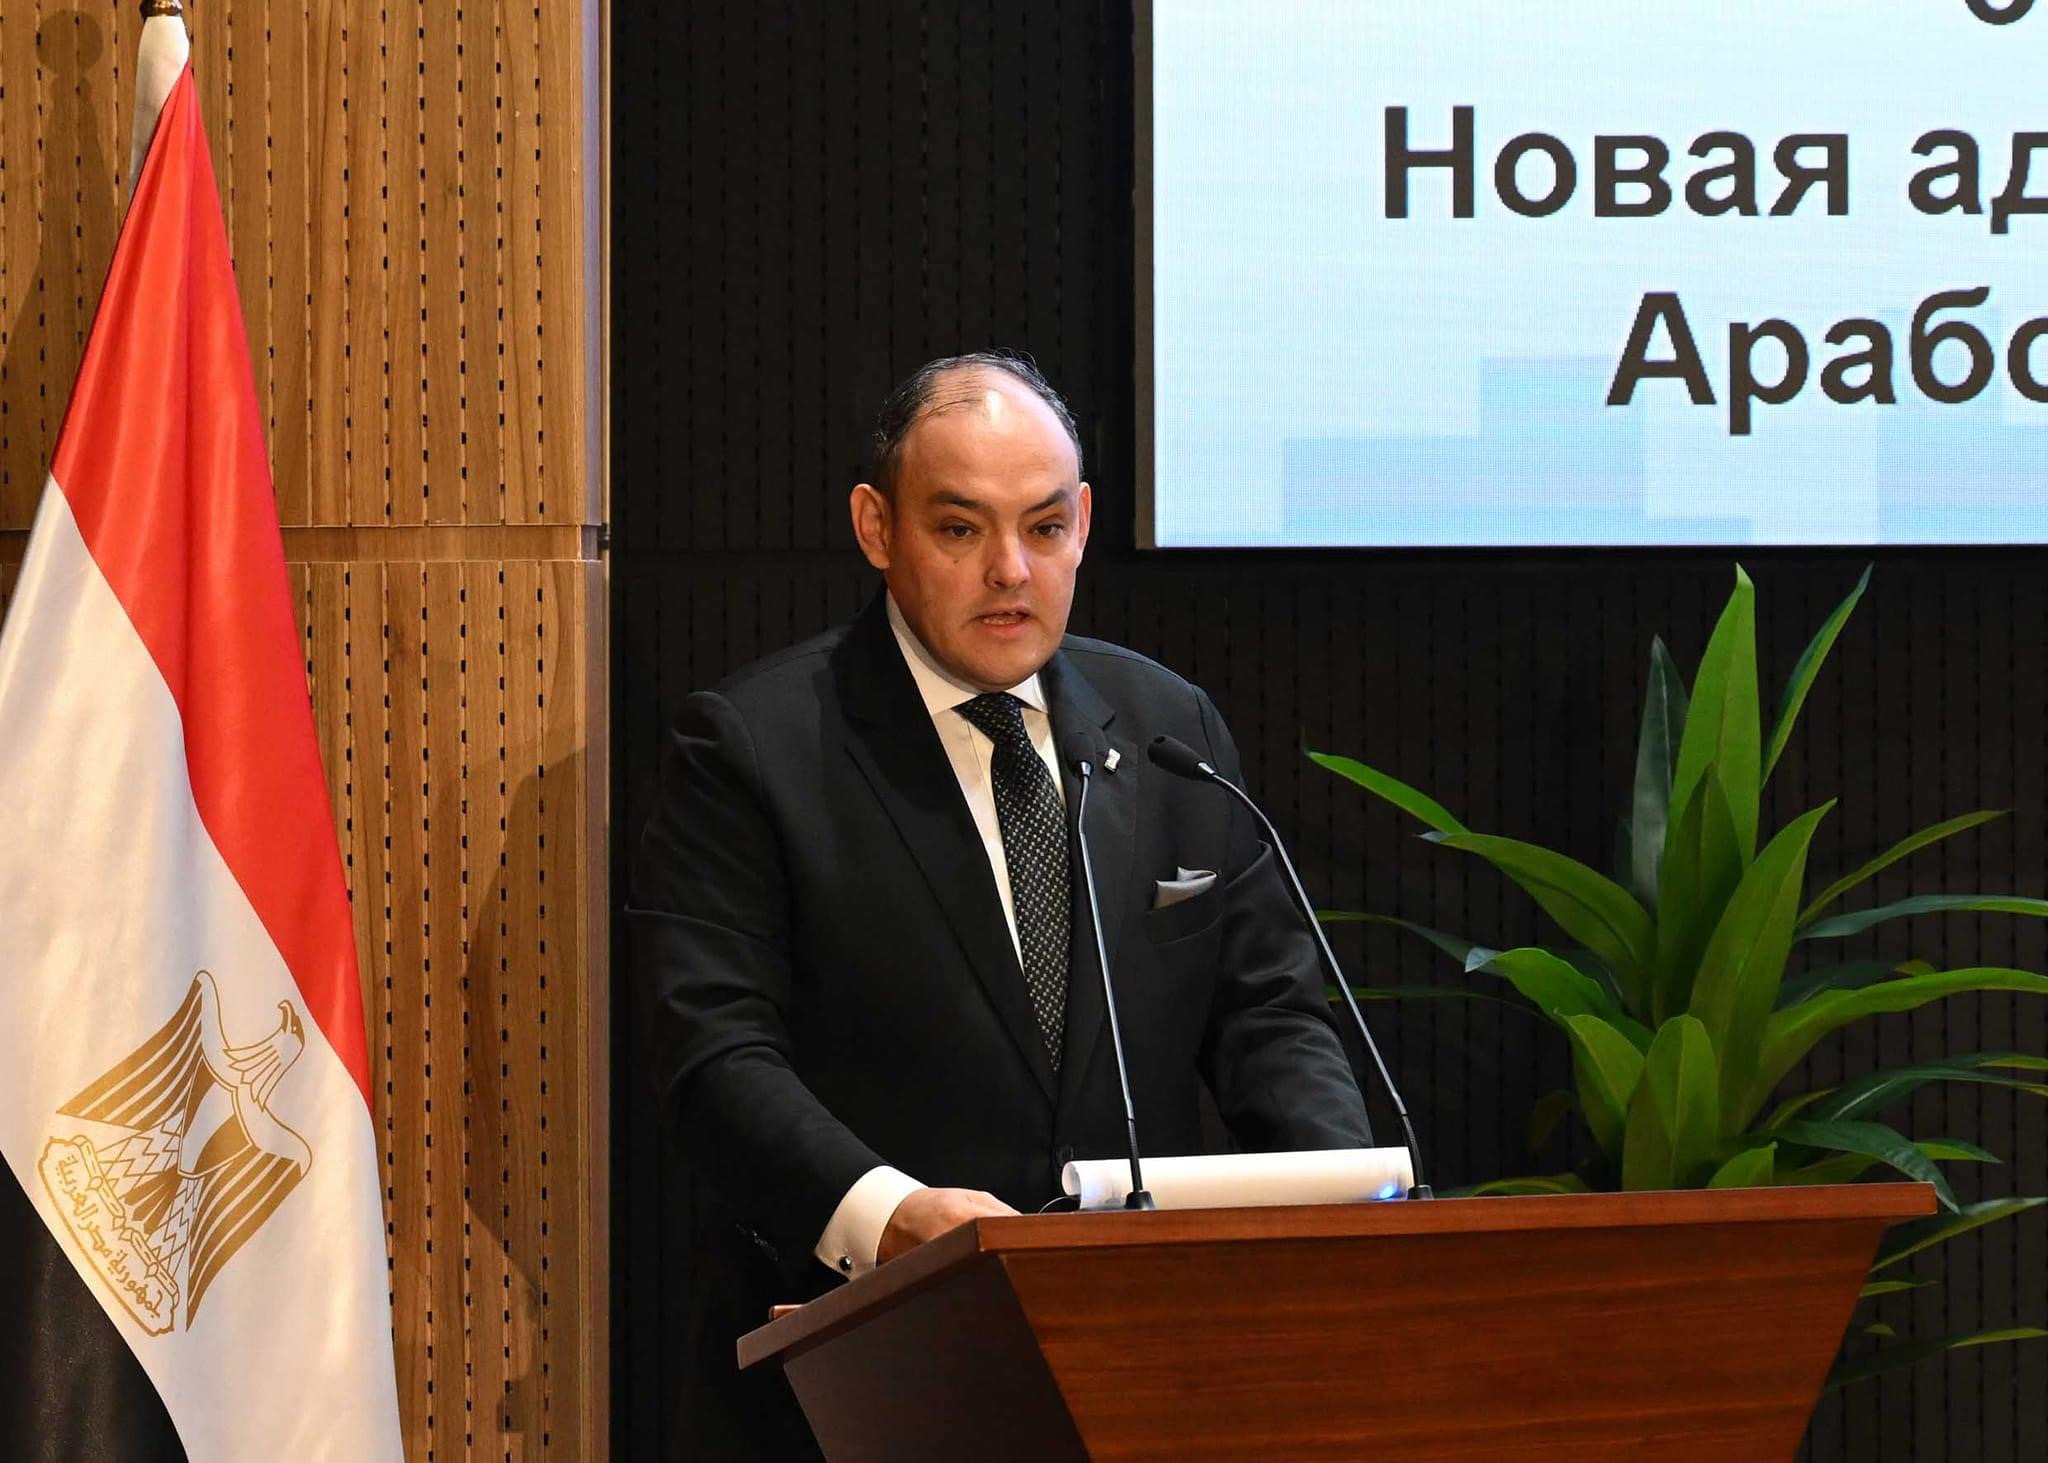 وزير التجارة والصناعة: الحكومة المصرية بذلت جهودا كبيرة لتحسين مناخ الاستثمار المصري أمام القطاع الخاص